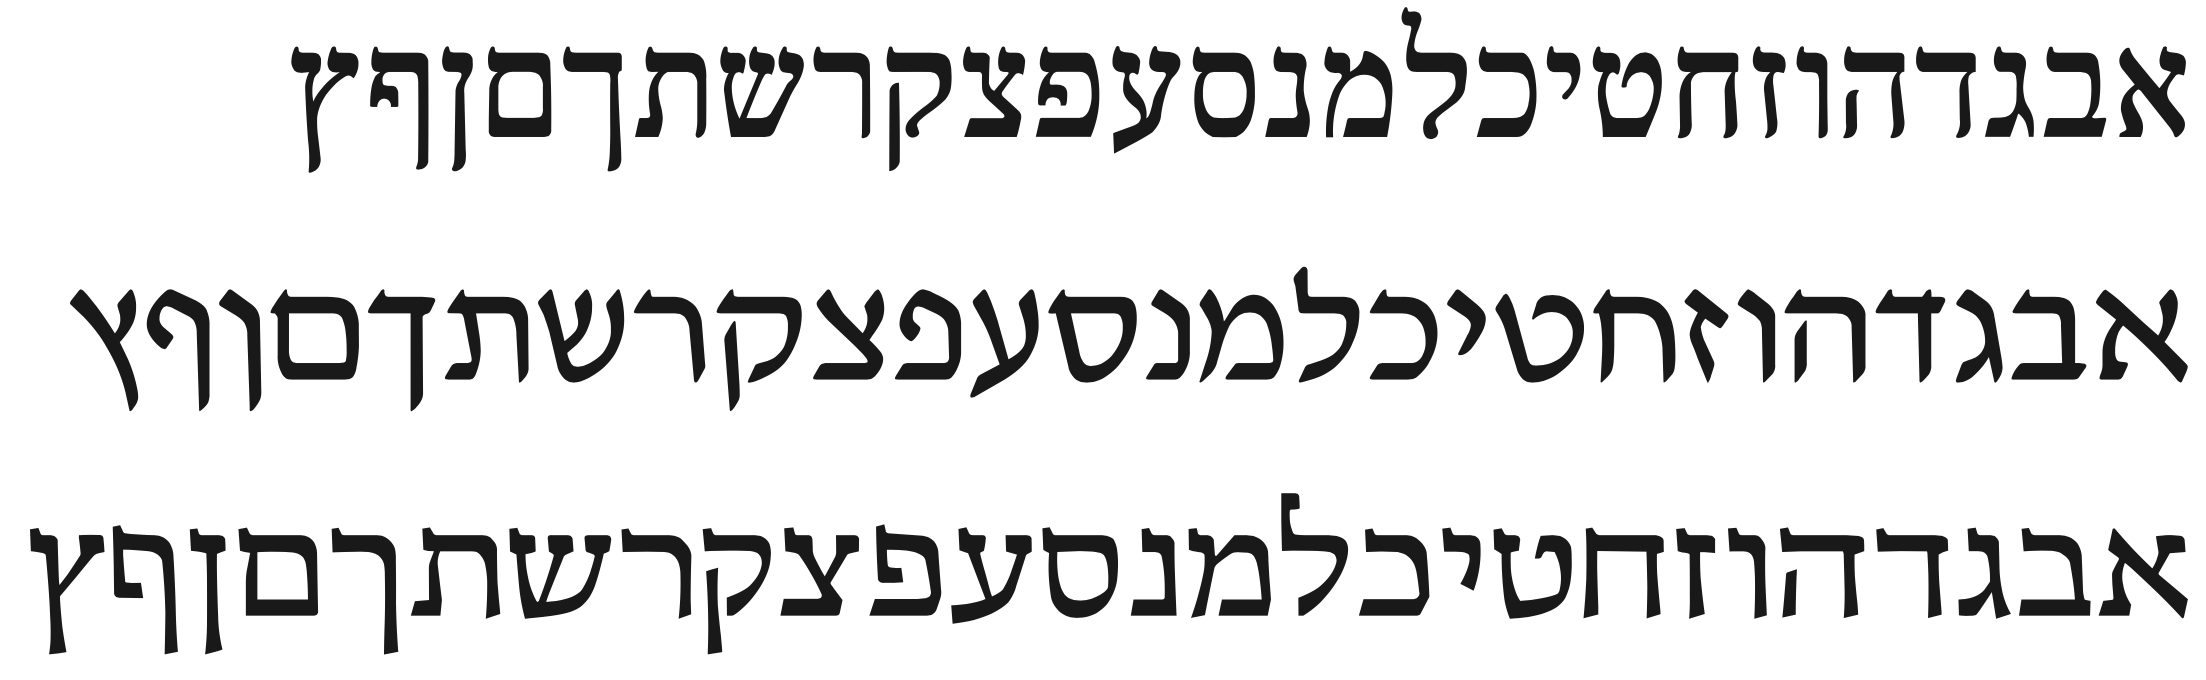 ancient hebrew fonts free download